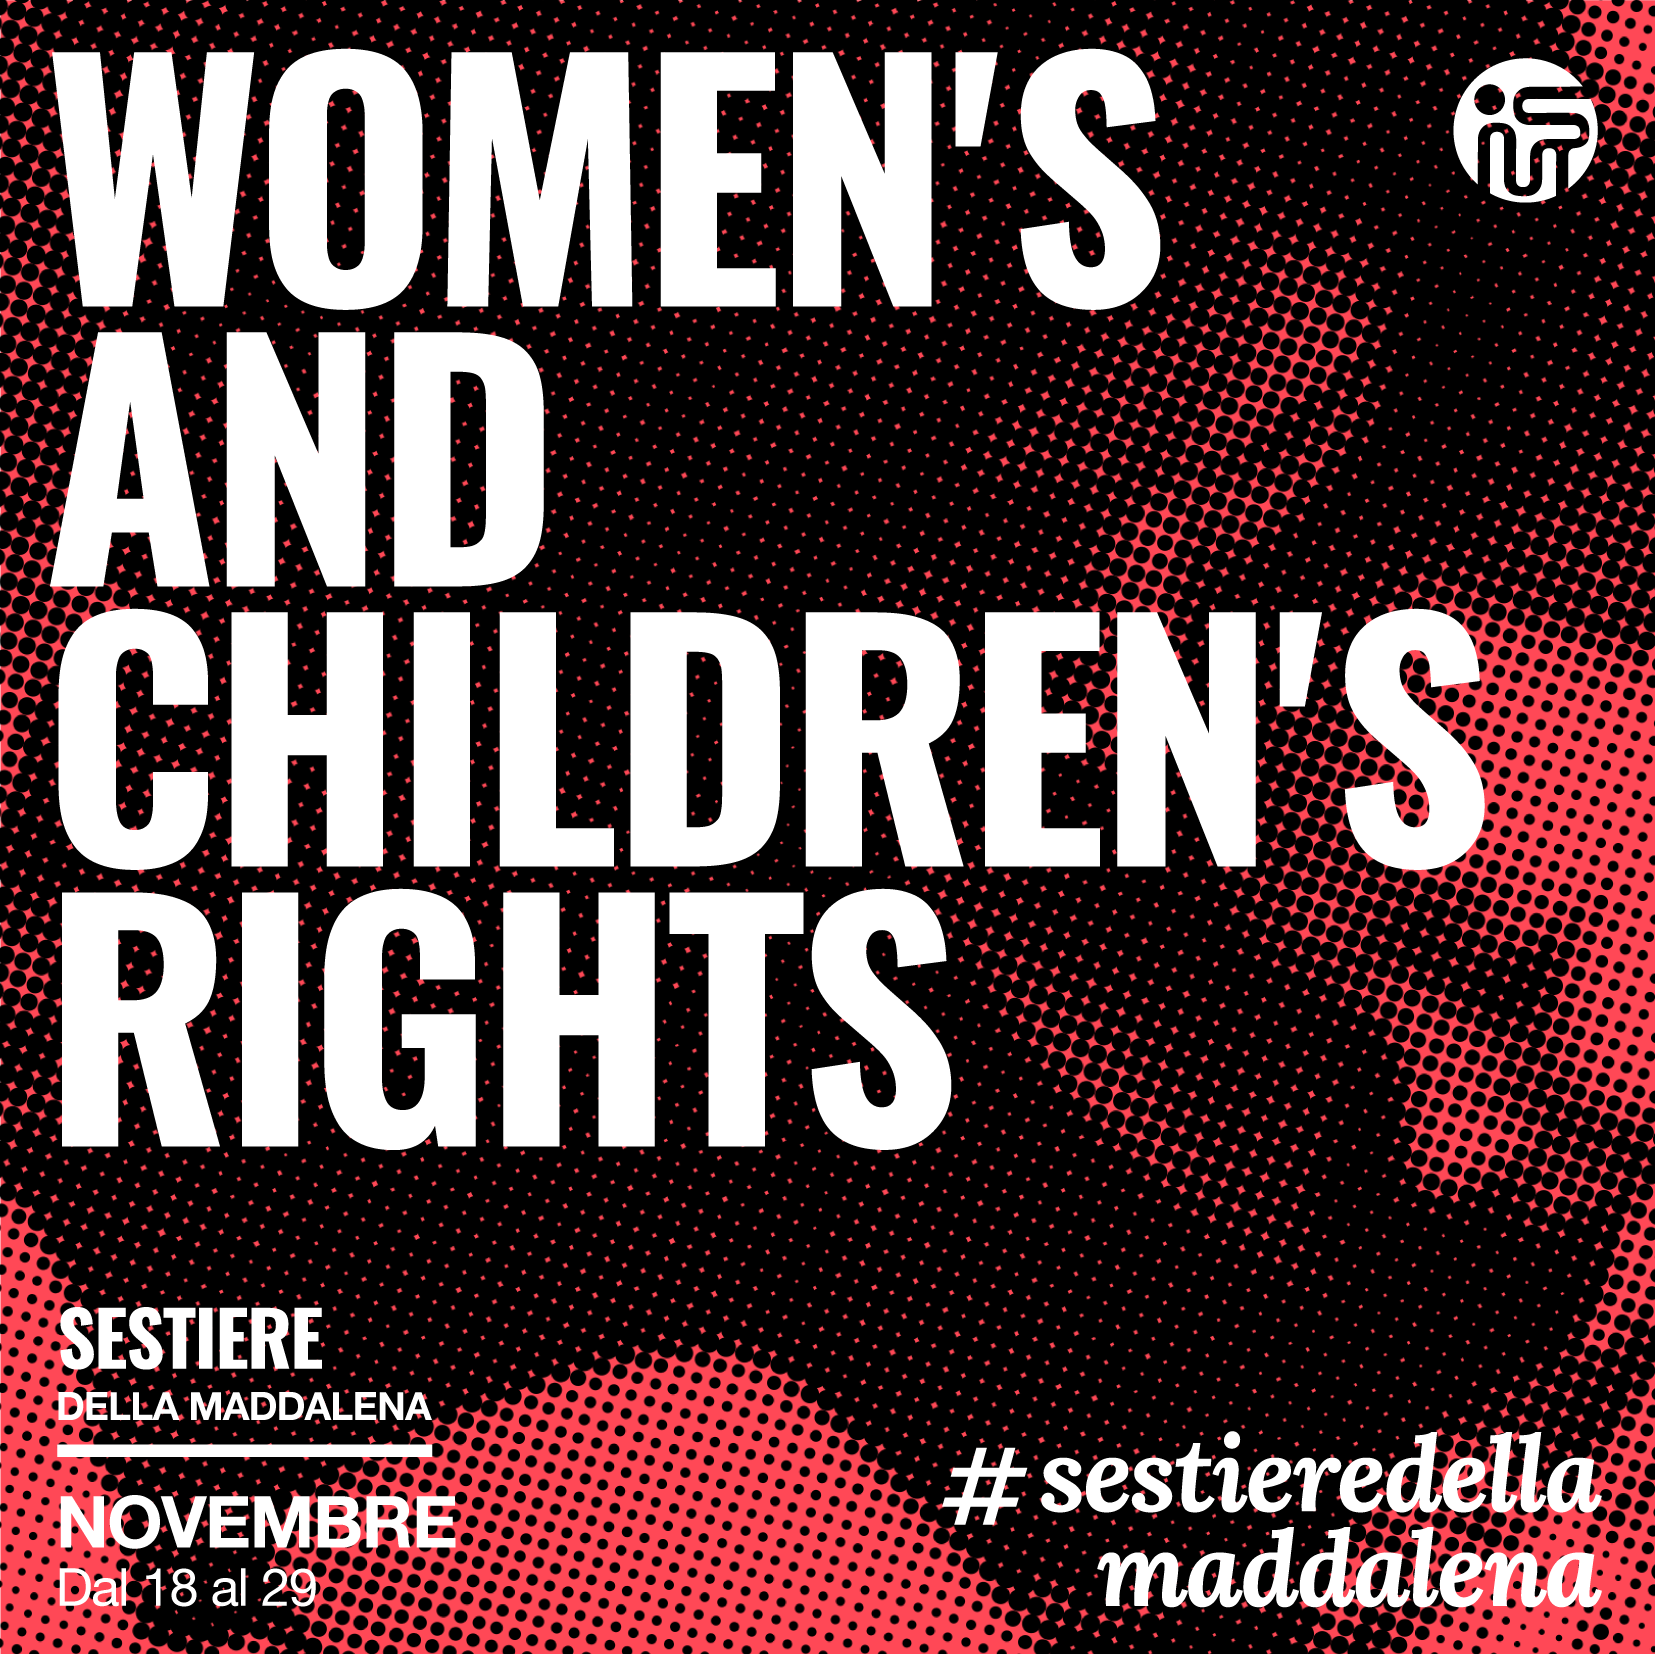 POST 01 – Patto Sestieri WOMEN’S AND CHILDREN’S RIGHTS